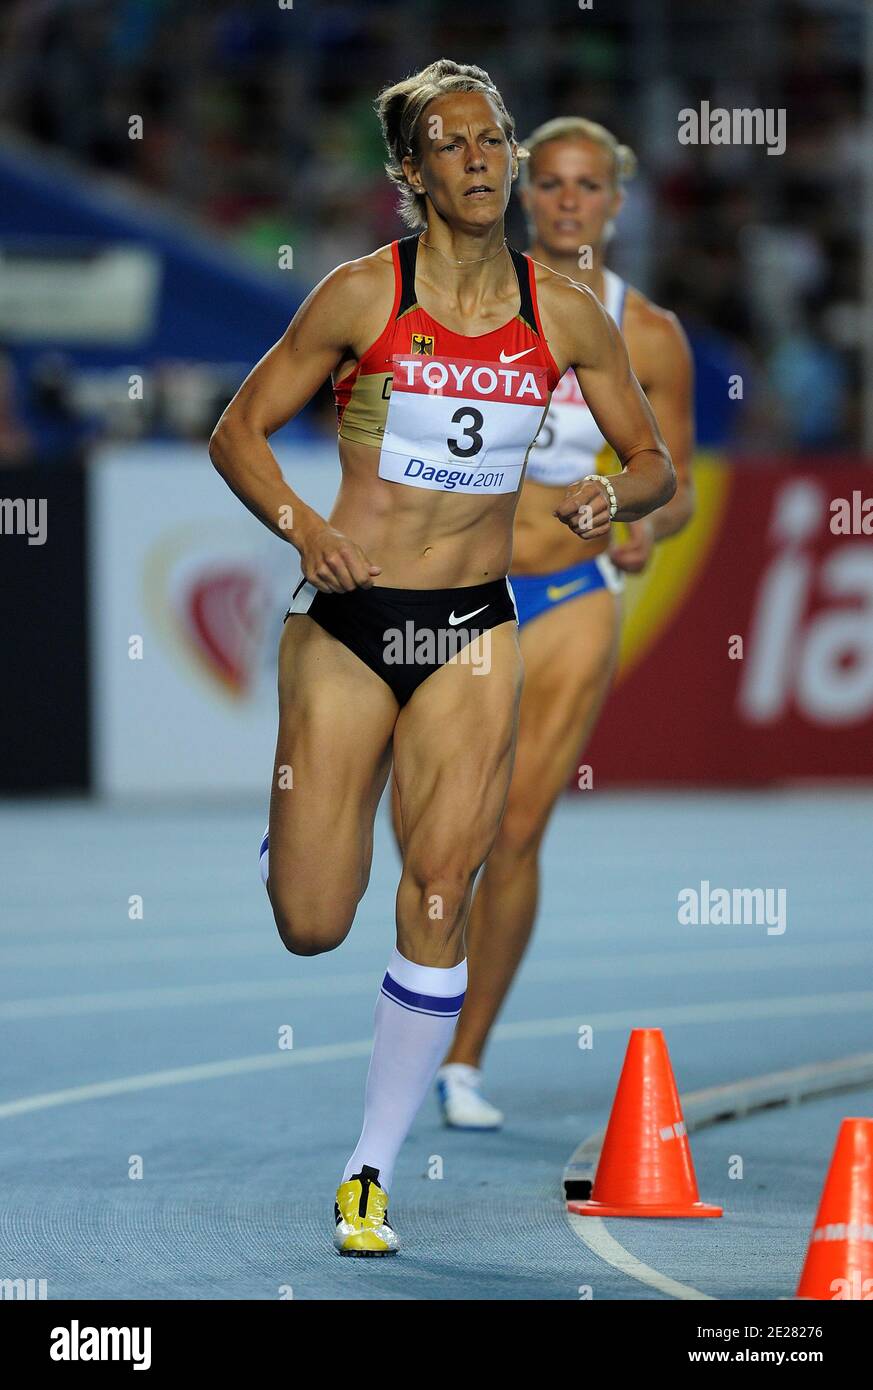 Jennifer Oeser, de Alemania, compite en los 800 metros del heptathlon femenino durante el cuarto día del XIII Campeonato Mundial de Atletismo de la IAAF en el Estadio Daegu en Daegu, Corea del Sur, el 30 de agosto de 2011. Foto de Myunggu han/ABACAPRESS.COM Foto de stock